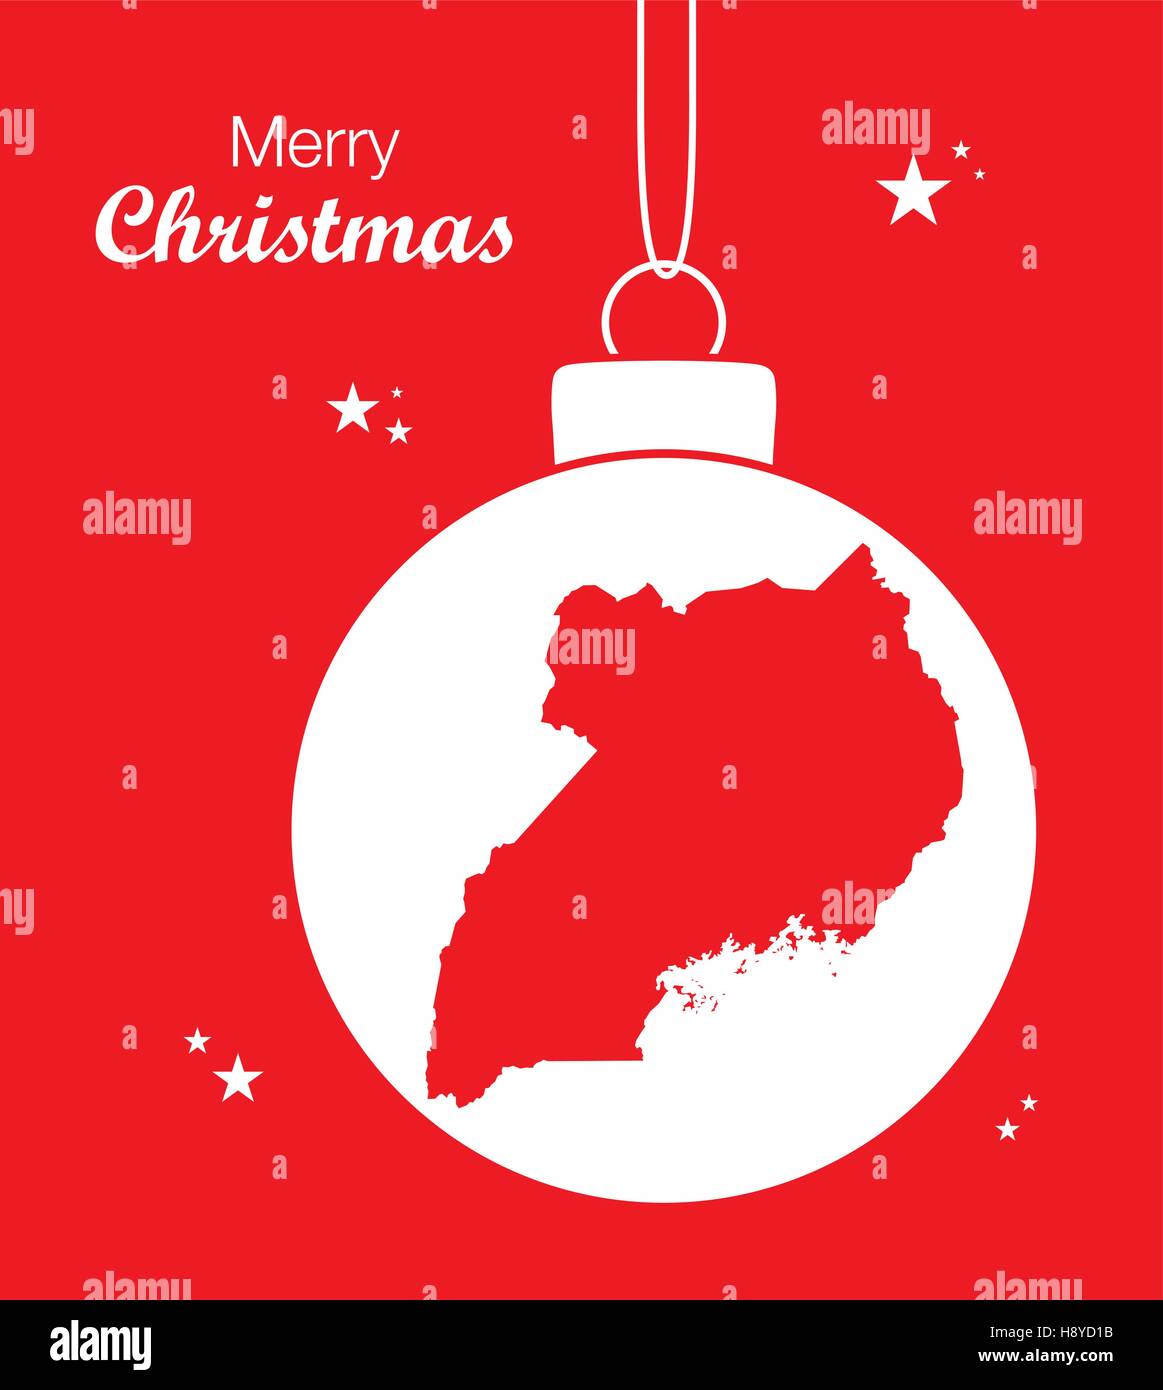 Joyeux Noël thème d'illustration avec la carte de l'Ouganda Illustration de Vecteur